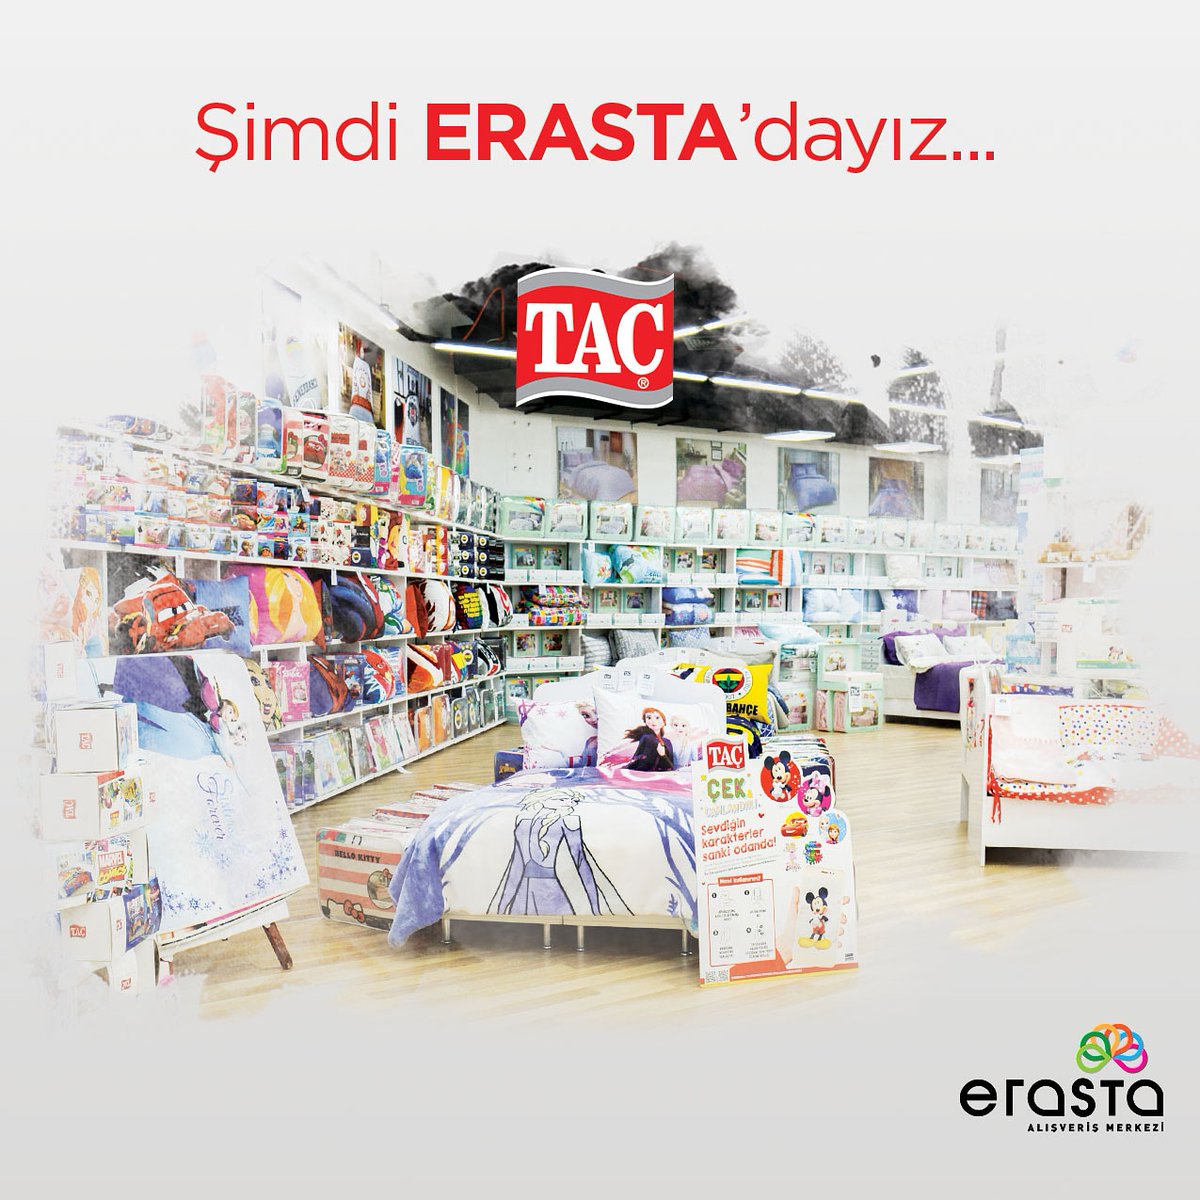 Taç mağazası şimdi Erasta Avm'de!
#taç #evmodası #erastaavm #antalya